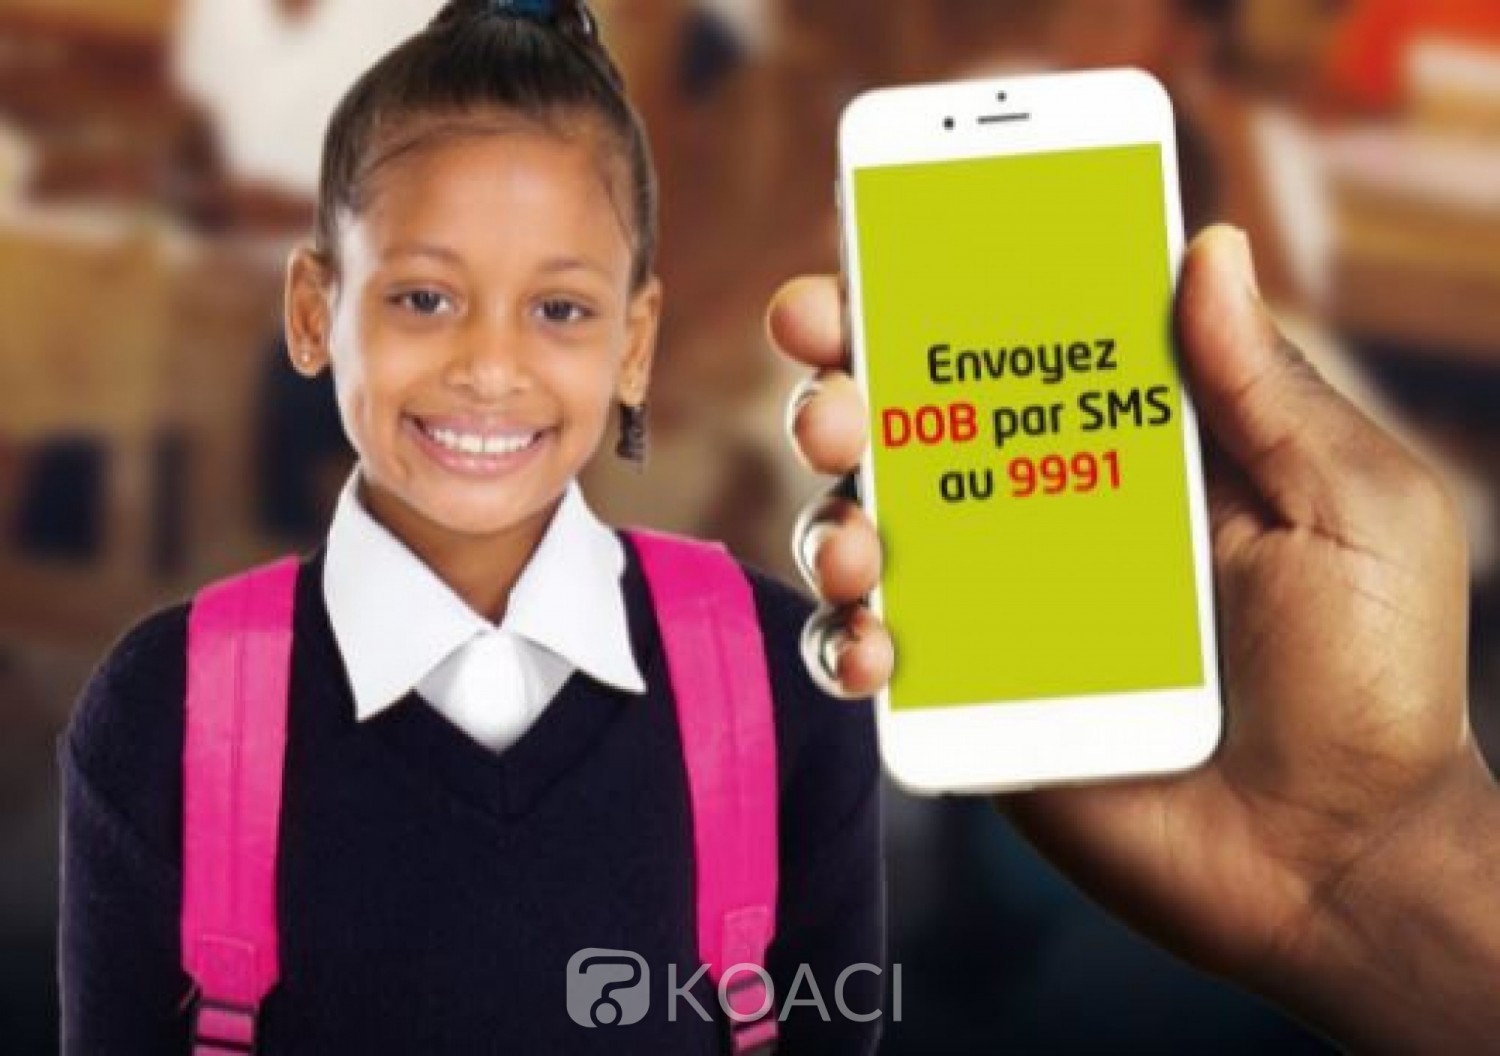 Côte d'Ivoire :    Rentrée scolaire 2021-2022, affectation en ligne des élèves de 6ème, le SMS facturé à 200 FCFA